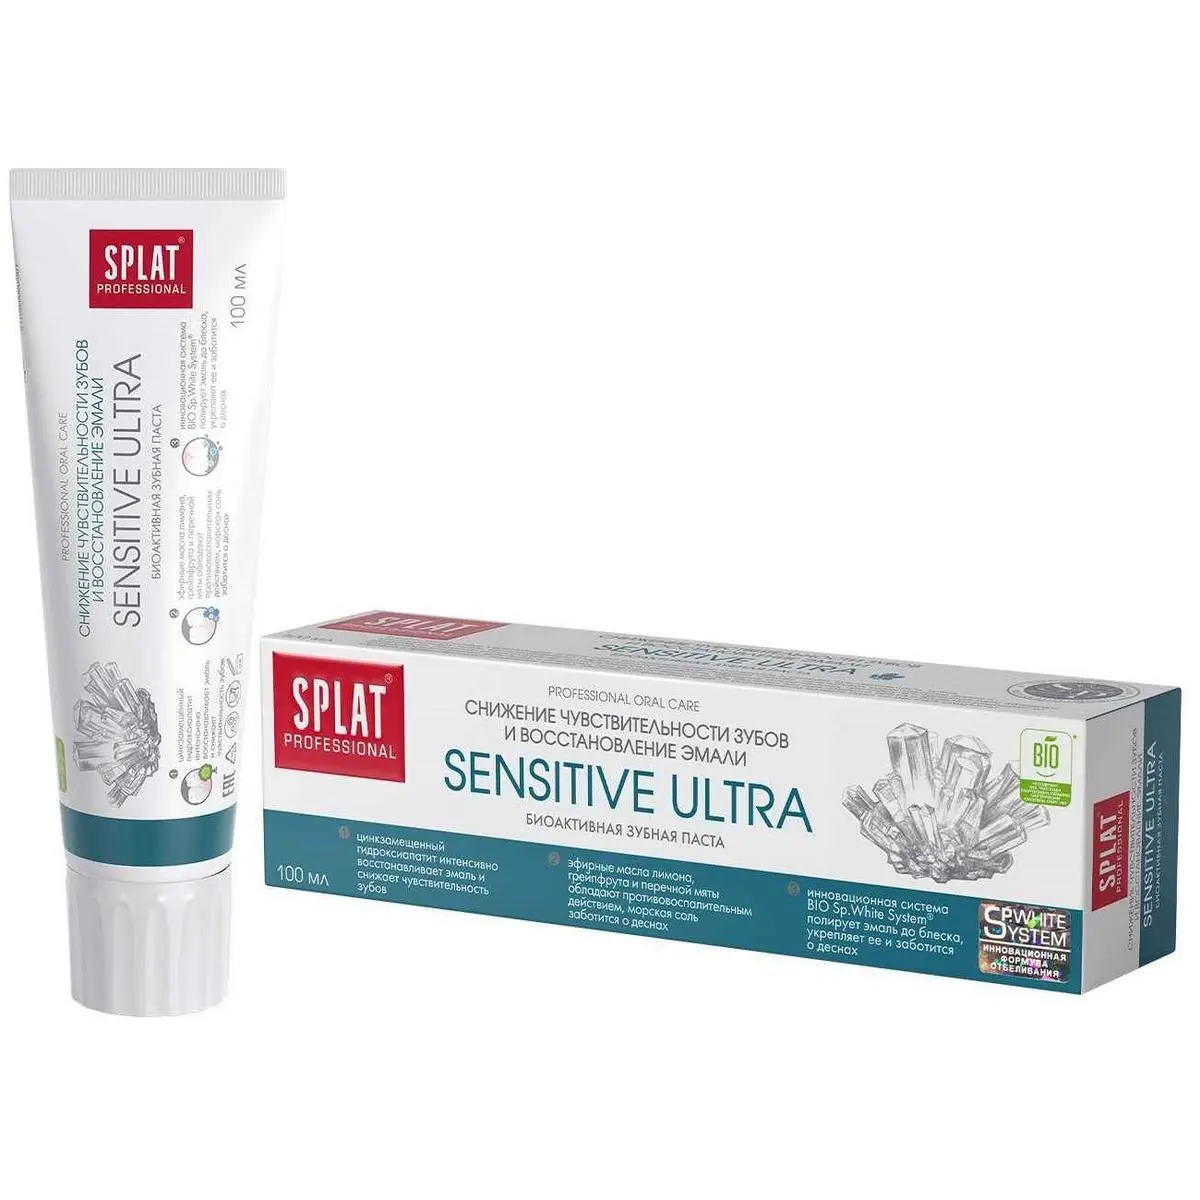 СПЛАТ Professional зубная паста Sensitive Ultra 100мл (Сплат Глобал, РФ)